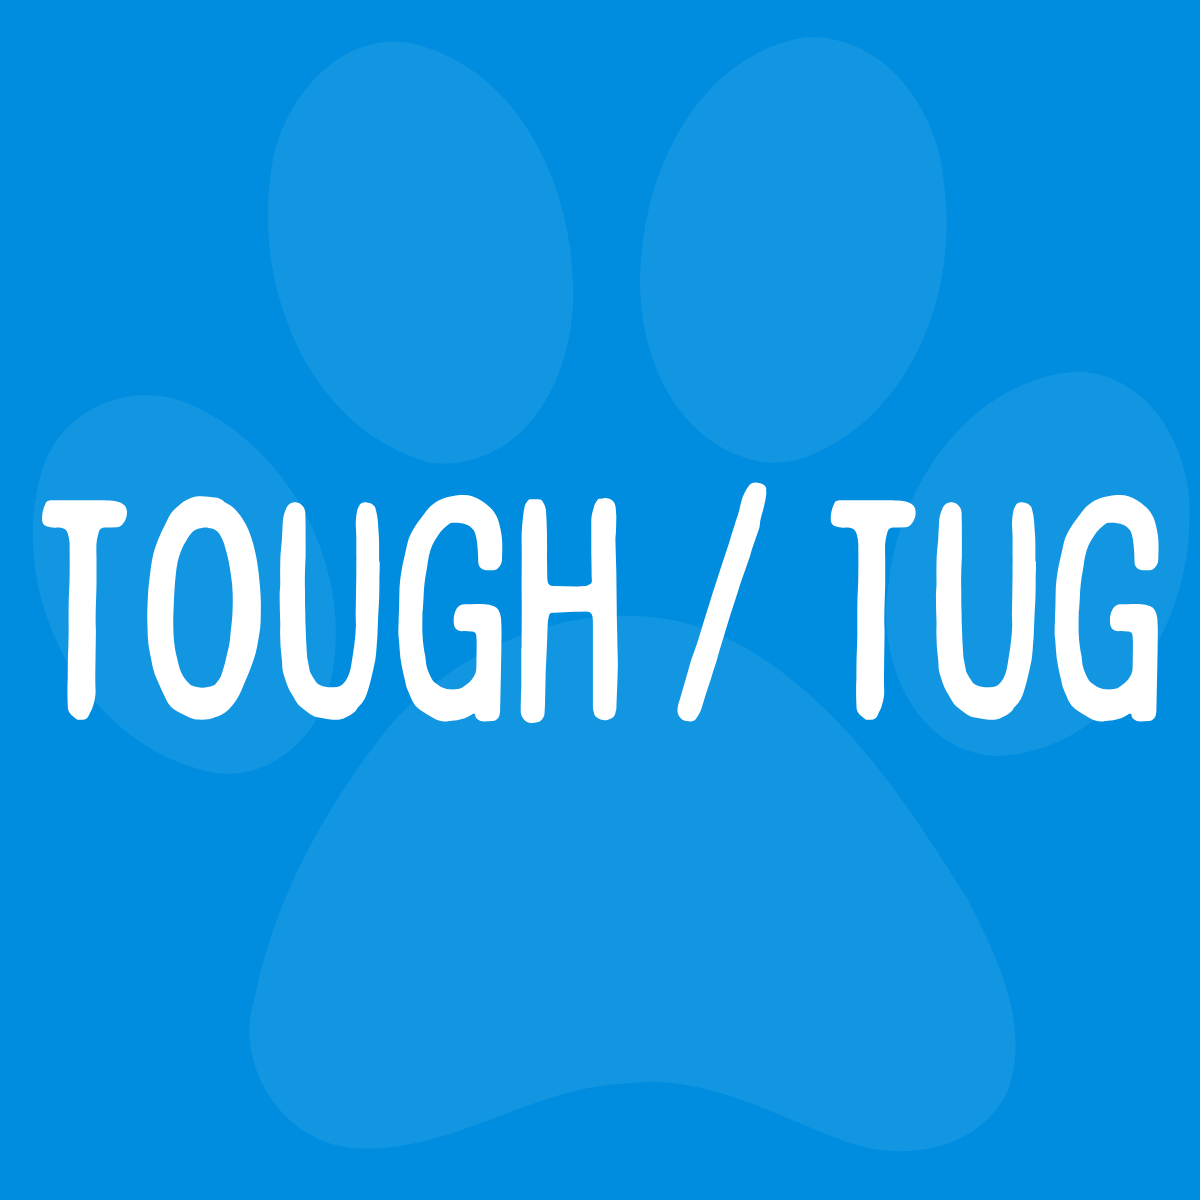 Tough / Tug